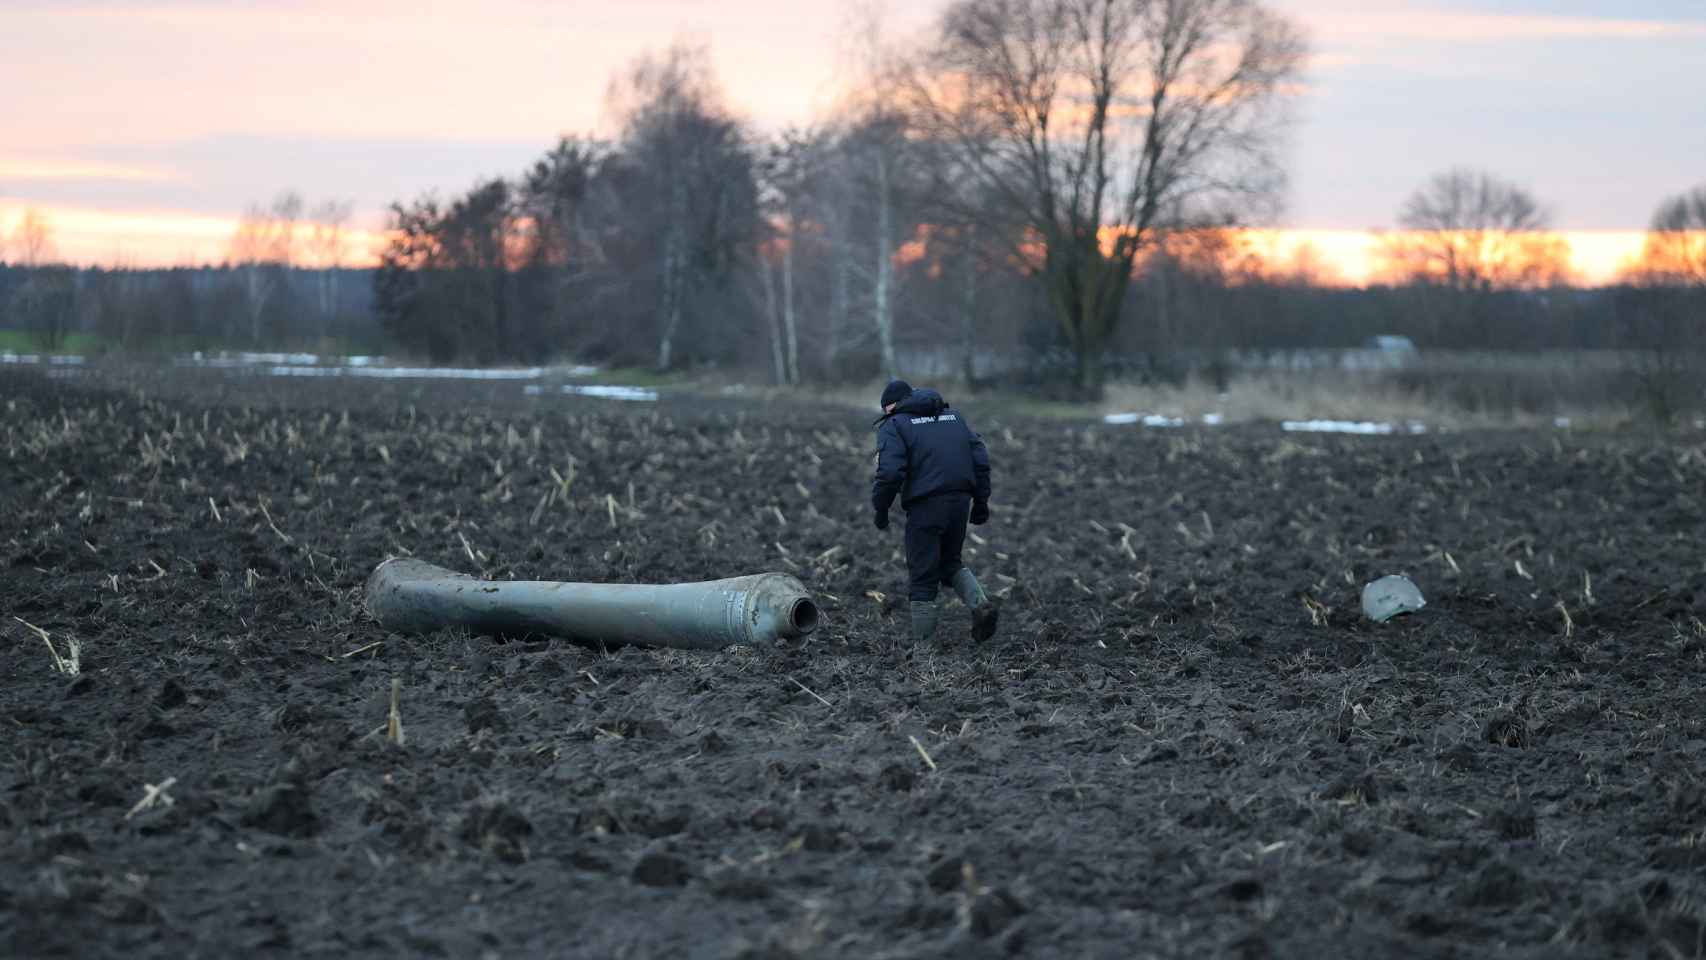 Un investigador revisa los restos del misil caído en Bielorrusia.